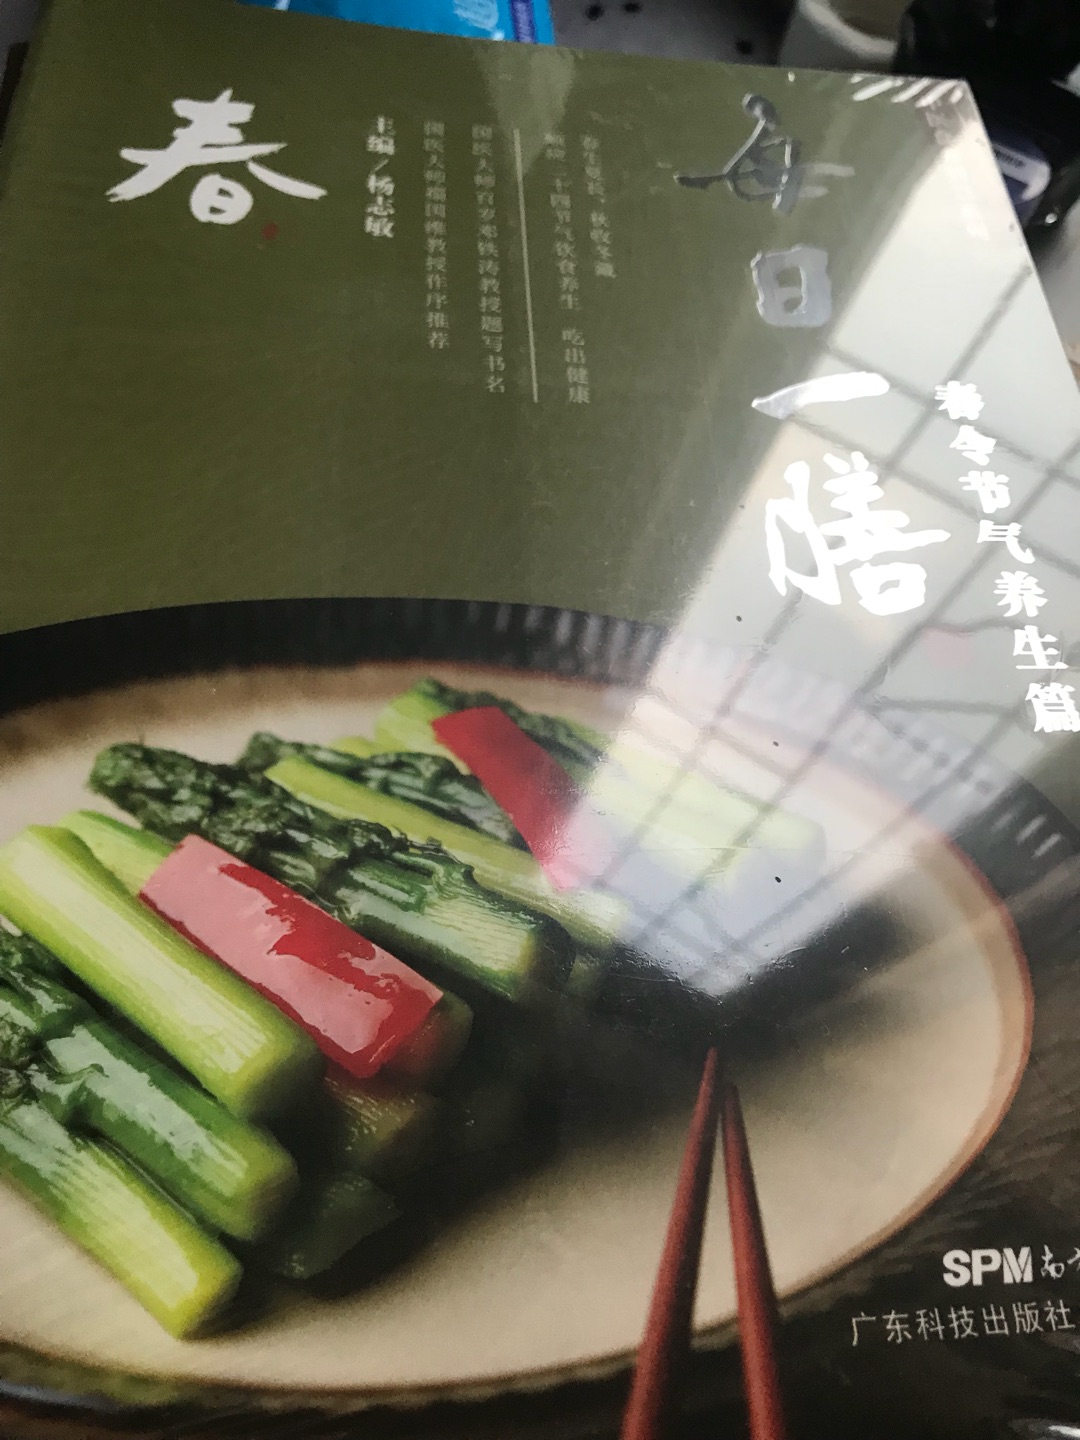 书的质量很不错，内容也非常好，这种做菜饮食适合广东人，主编出身广东中药世家，省中医的保健专家